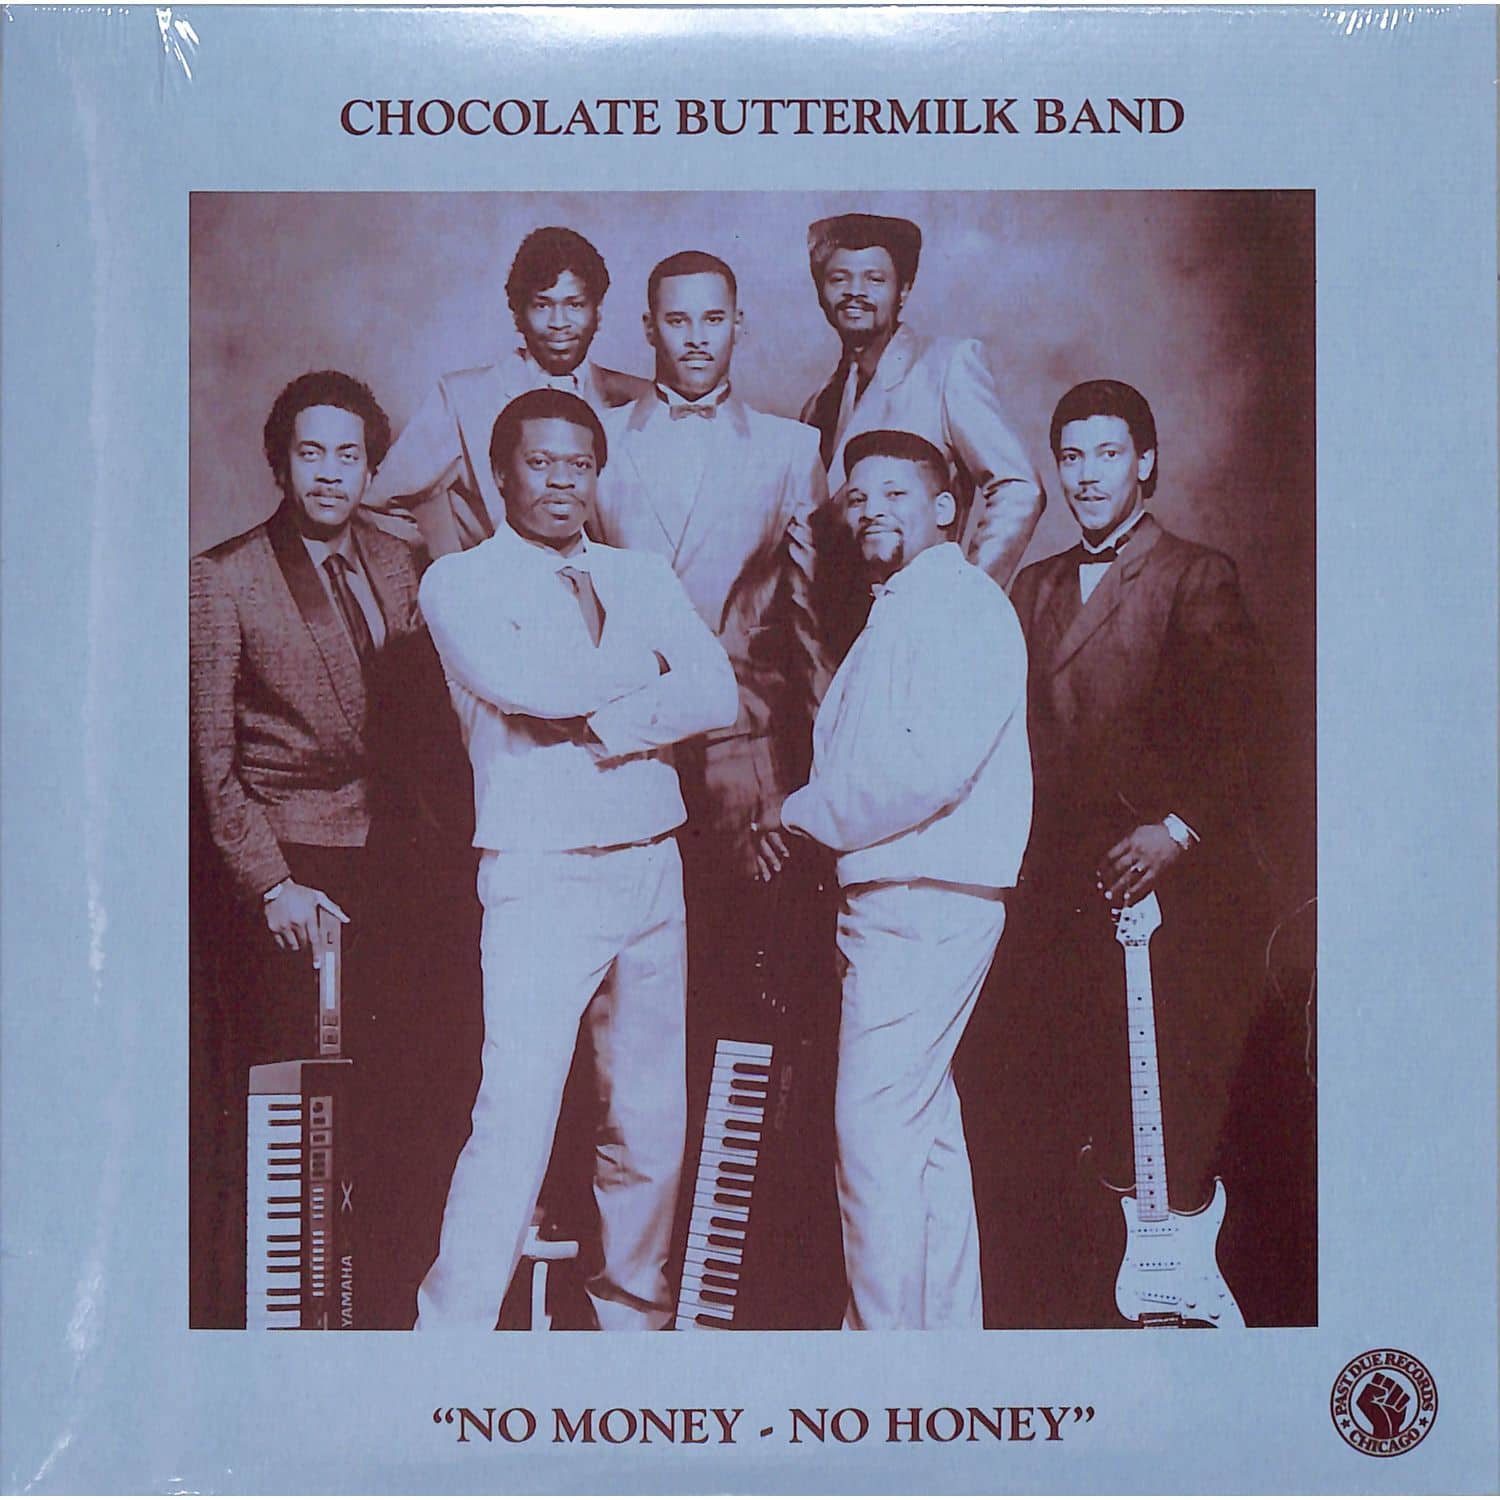 Chocolate Buttermilk Band - NO MONEY - NO HONEY 